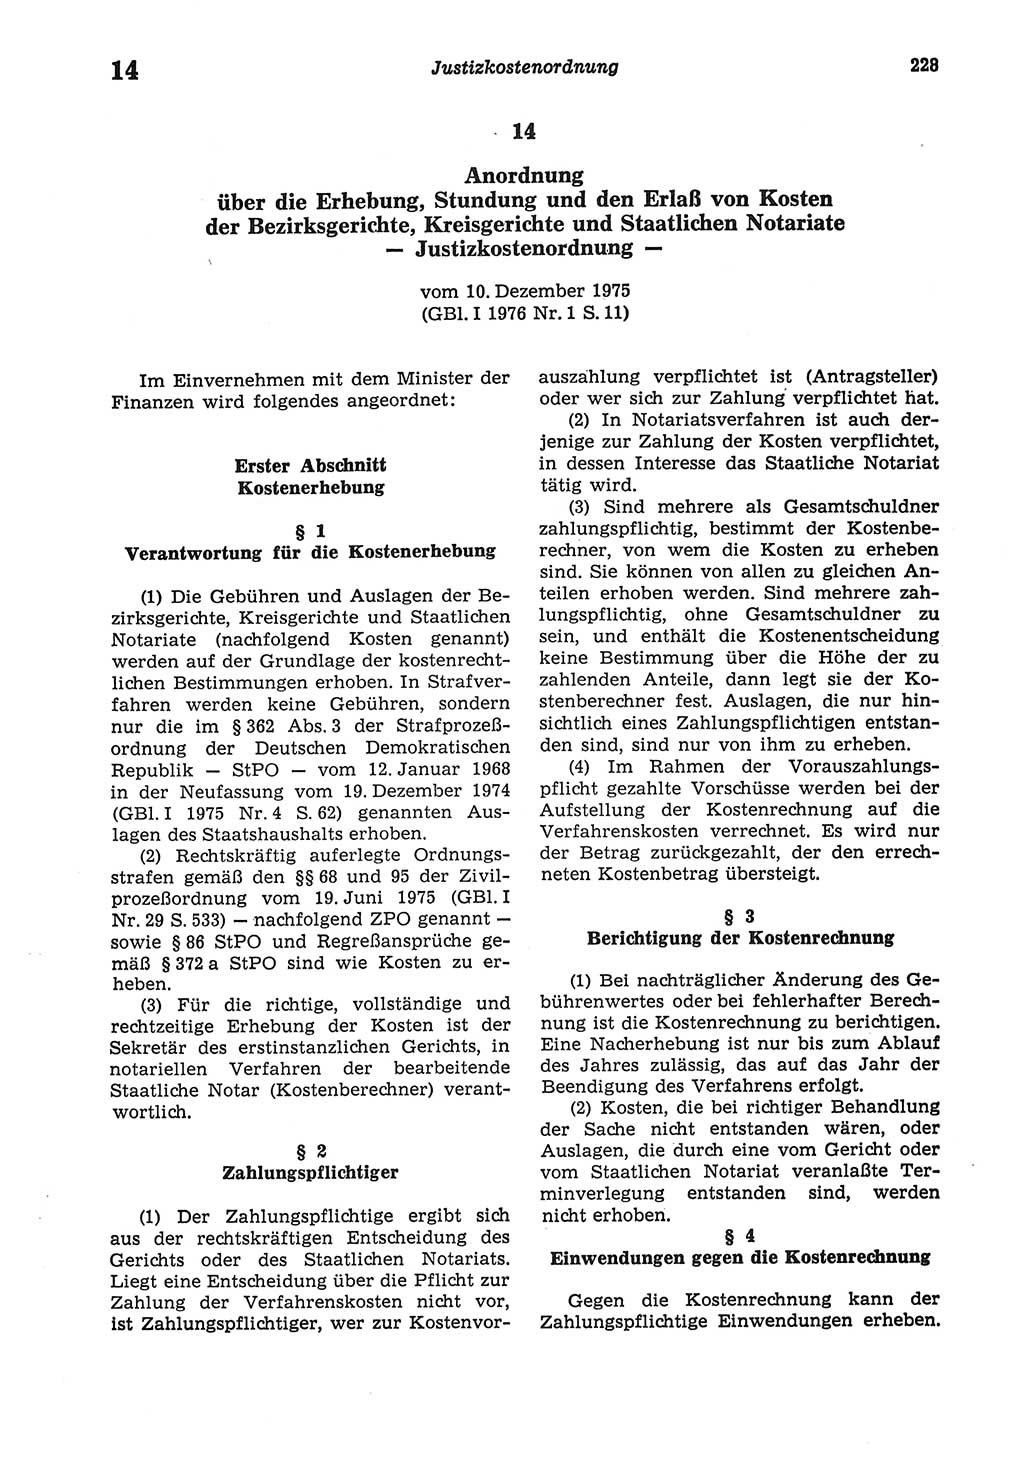 Strafprozeßordnung (StPO) der Deutschen Demokratischen Republik (DDR) sowie angrenzende Gesetze und Bestimmungen 1977, Seite 228 (StPO DDR Ges. Best. 1977, S. 228)